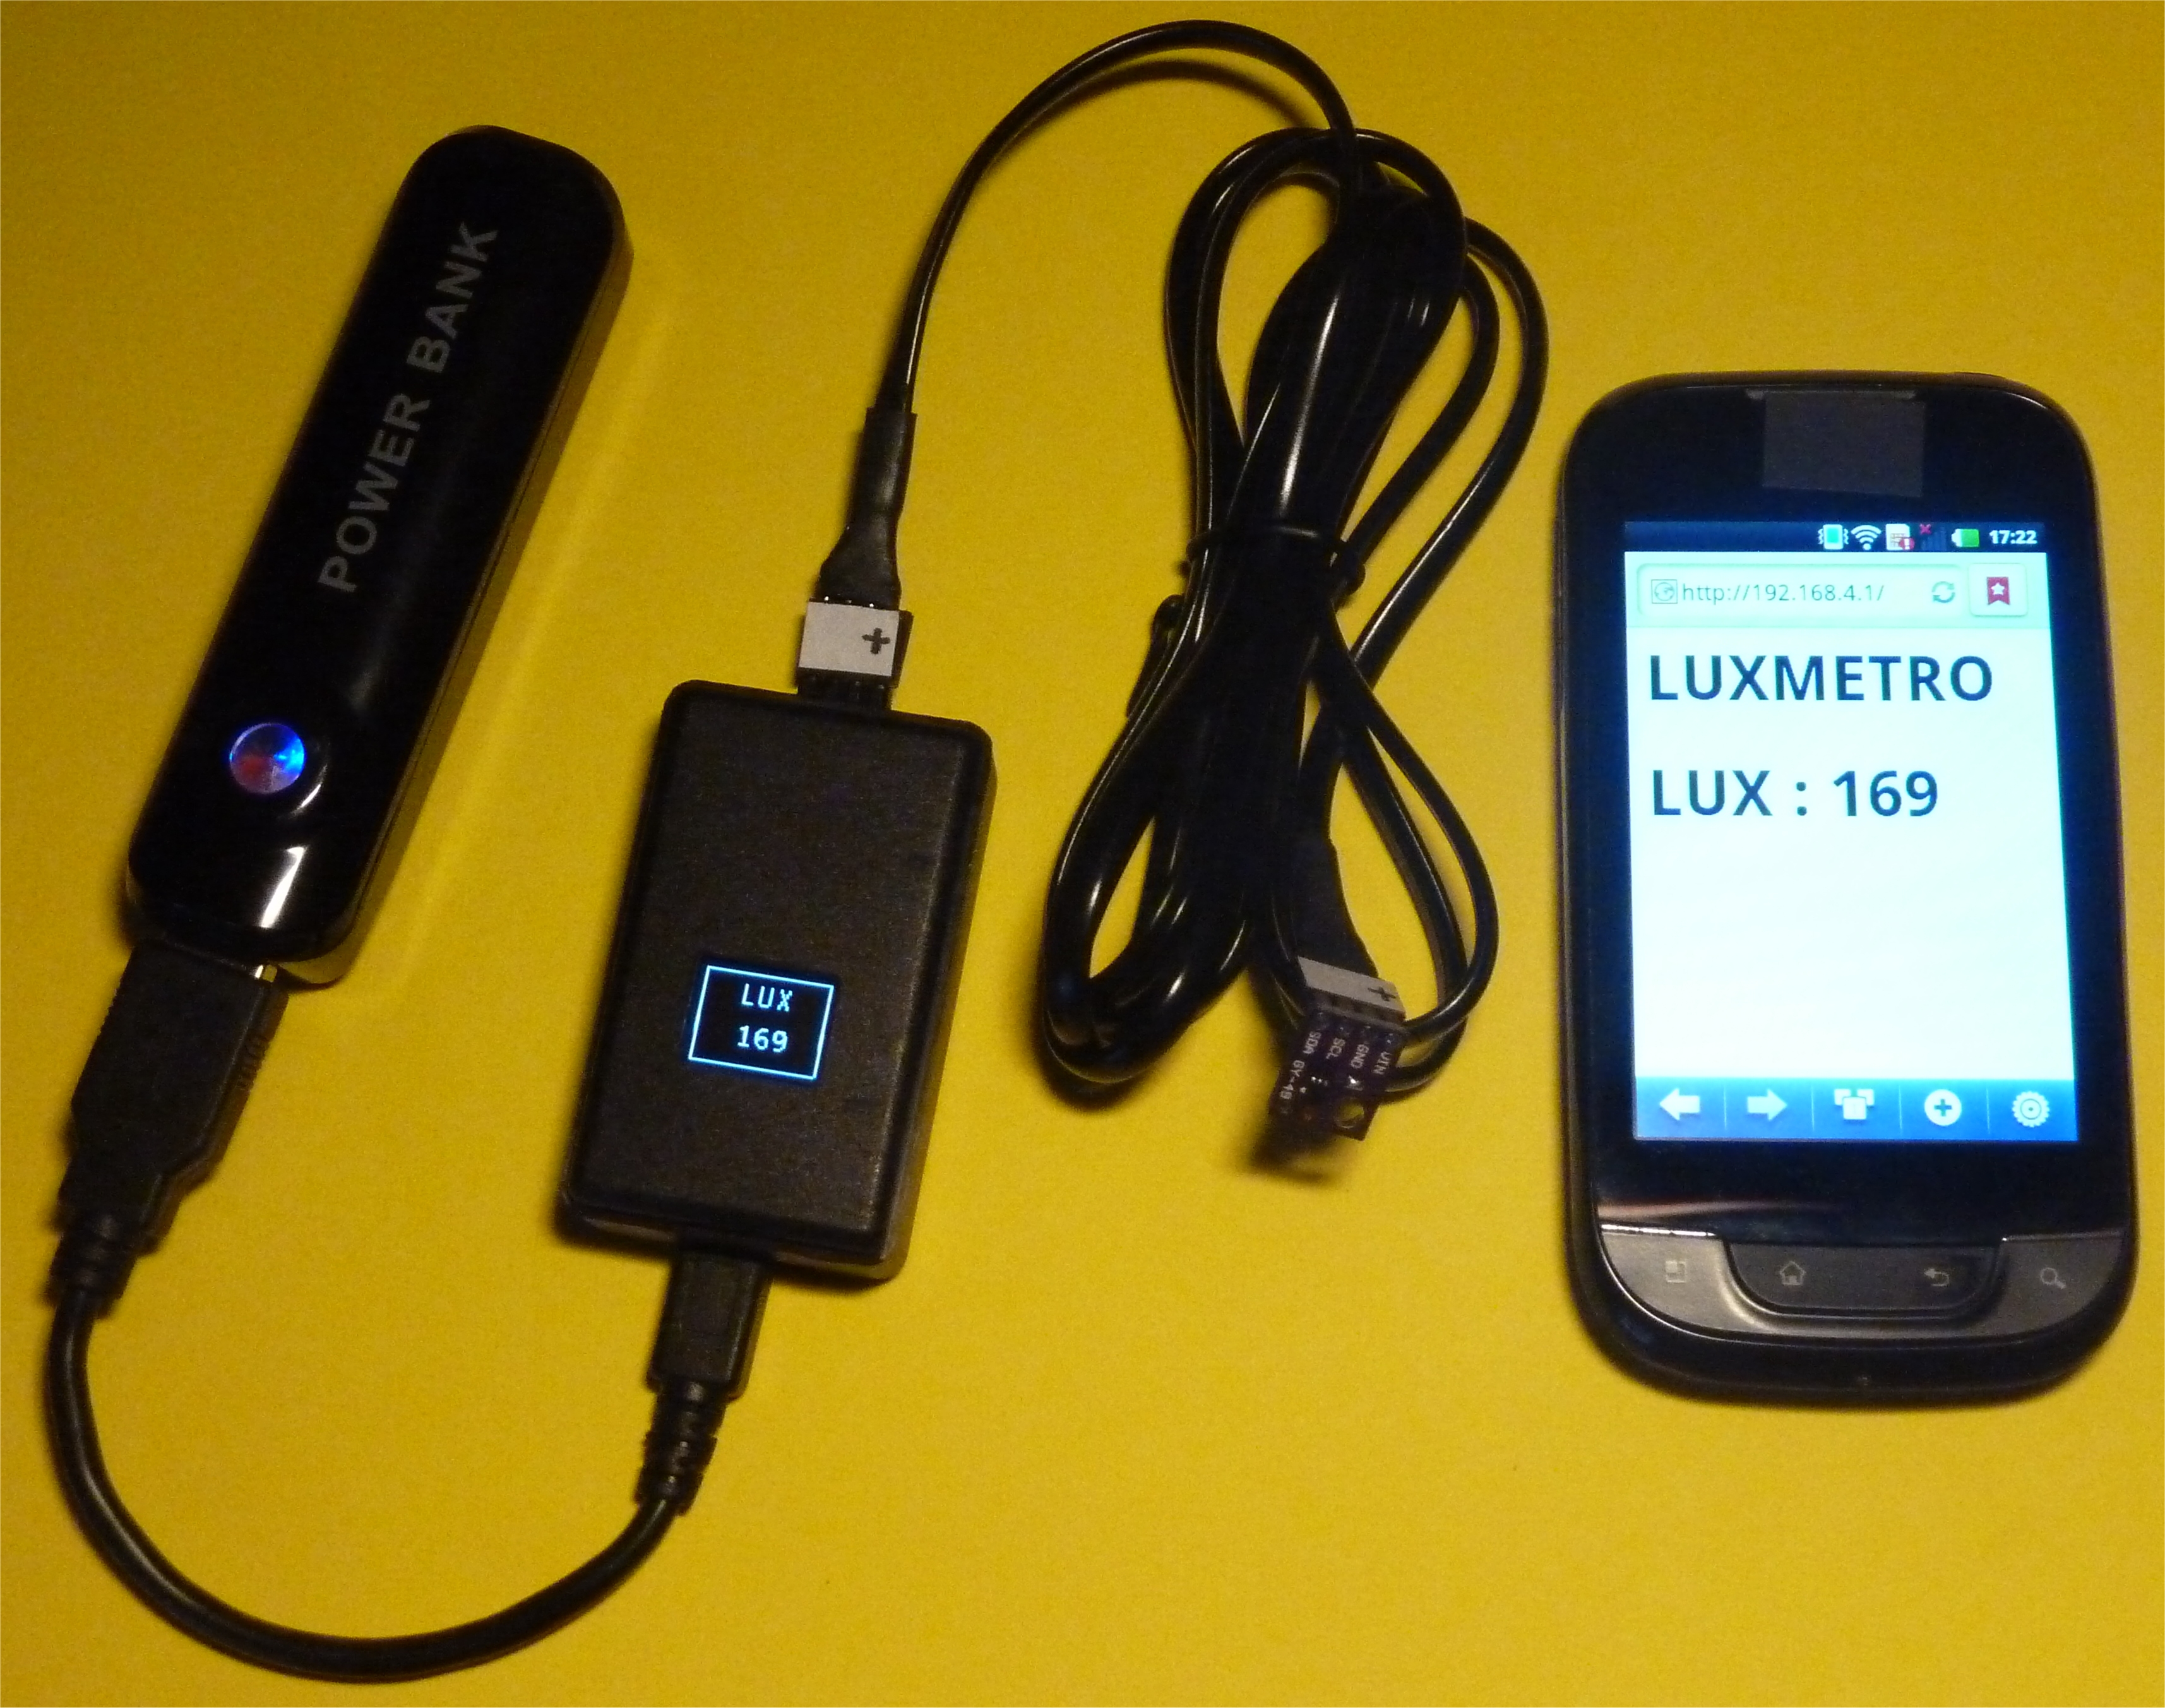 Luxmetro WiFi WeMos D1 mini